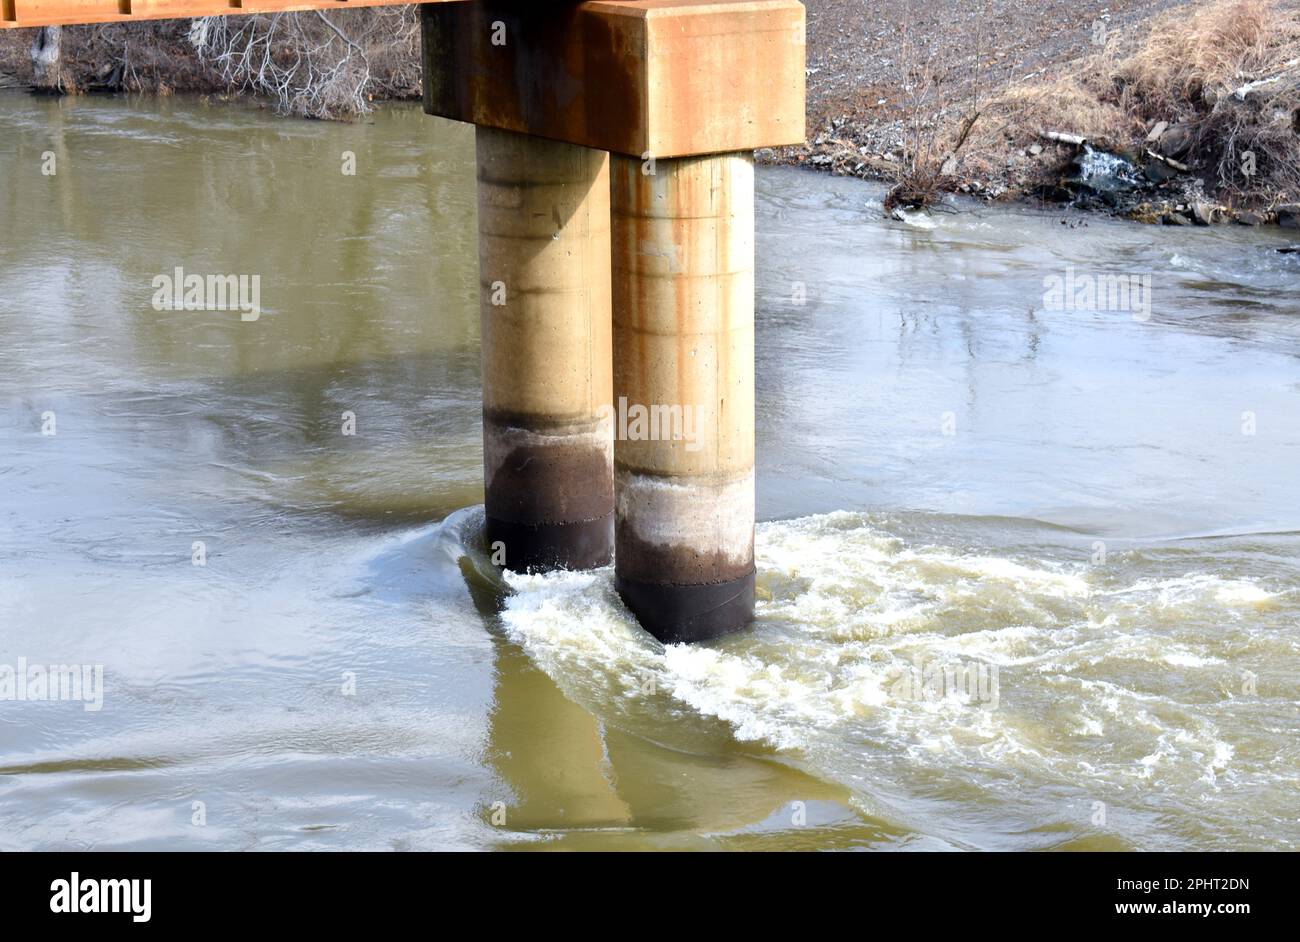 L'acqua alta del fiume Neosho (noto anche come Grand River) colpisce le pile di cemento del Grand Bridge a Fort Gibson, Oklahoma. Foto Stock